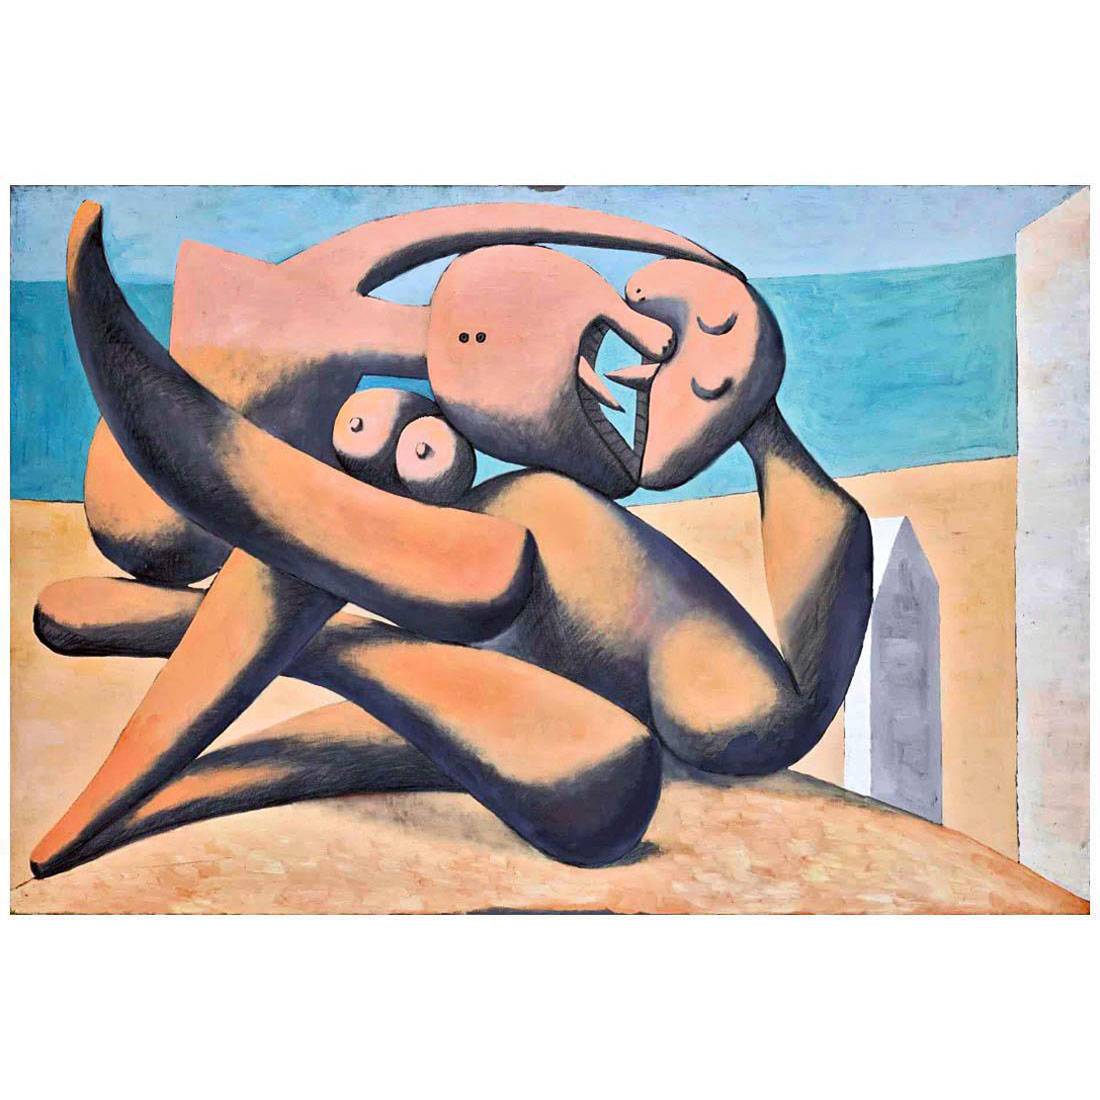 Pablo Picasso. Figures au bord de la mer. 1931. Musee Picasso, Paris